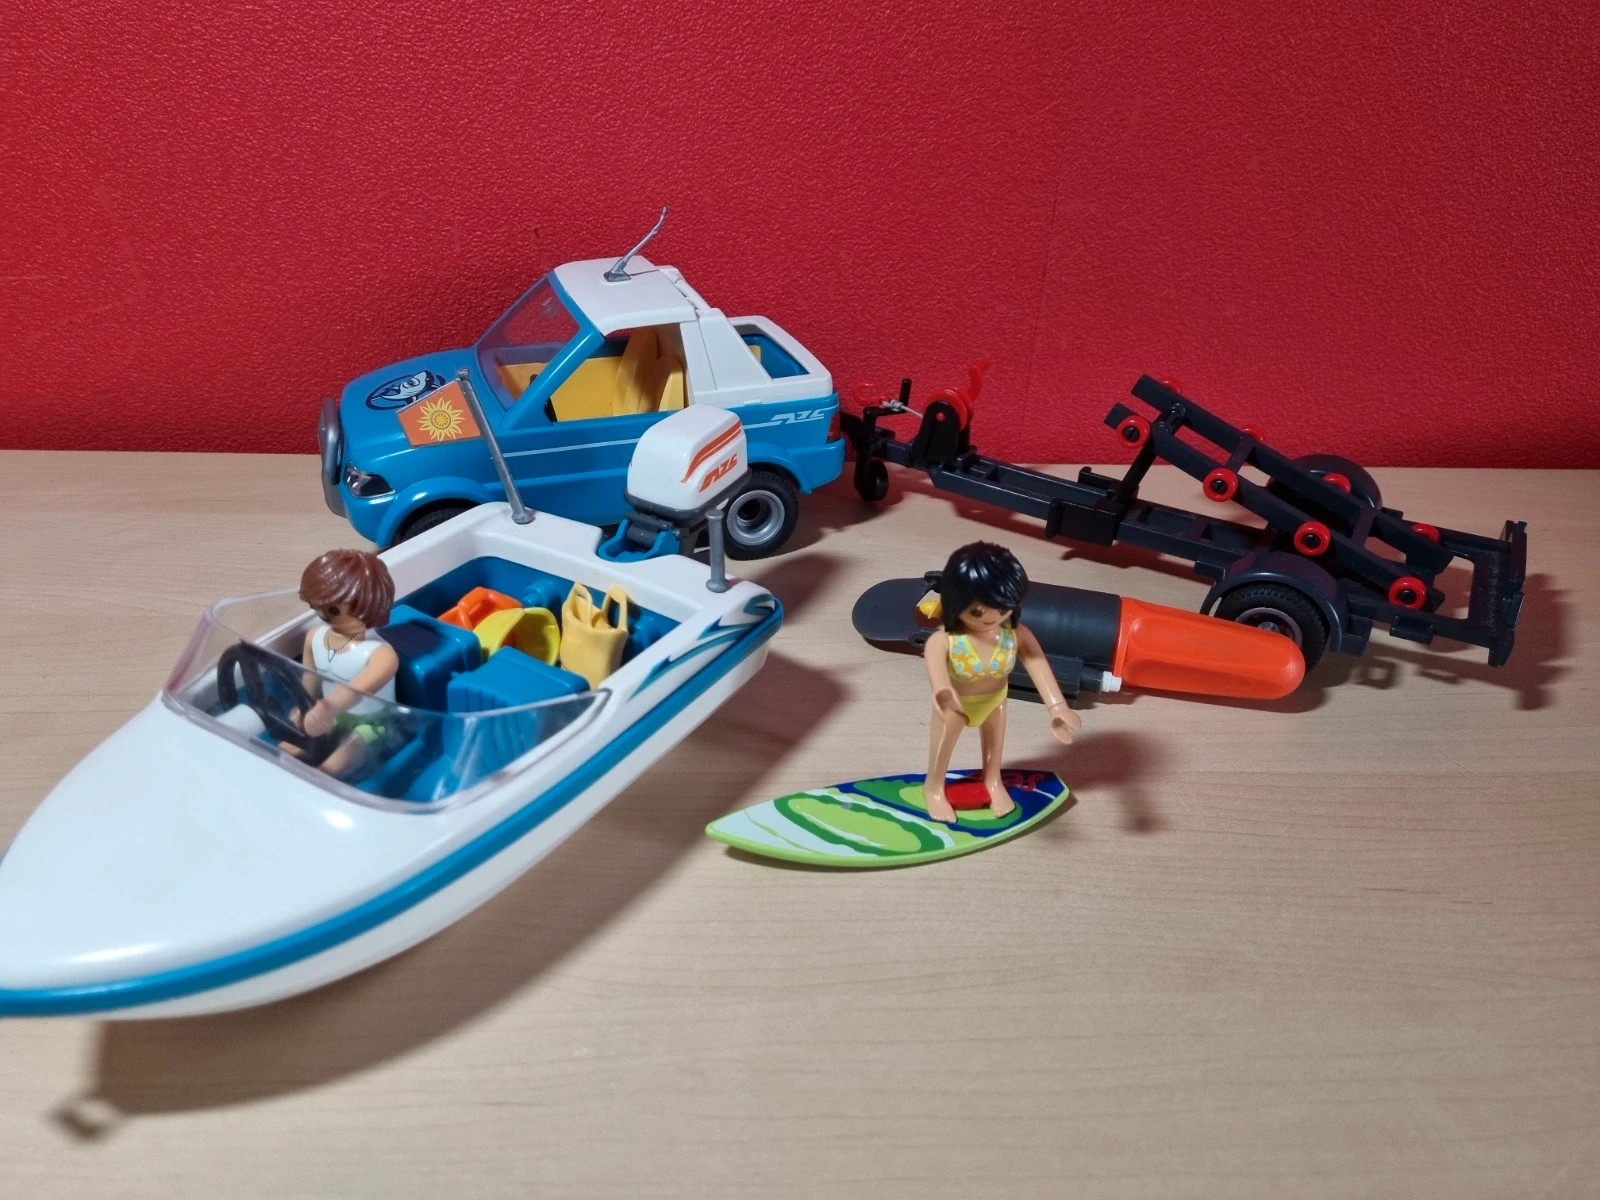 Playmobil Summer Fun 6864 Voiture avec bateau et moteur